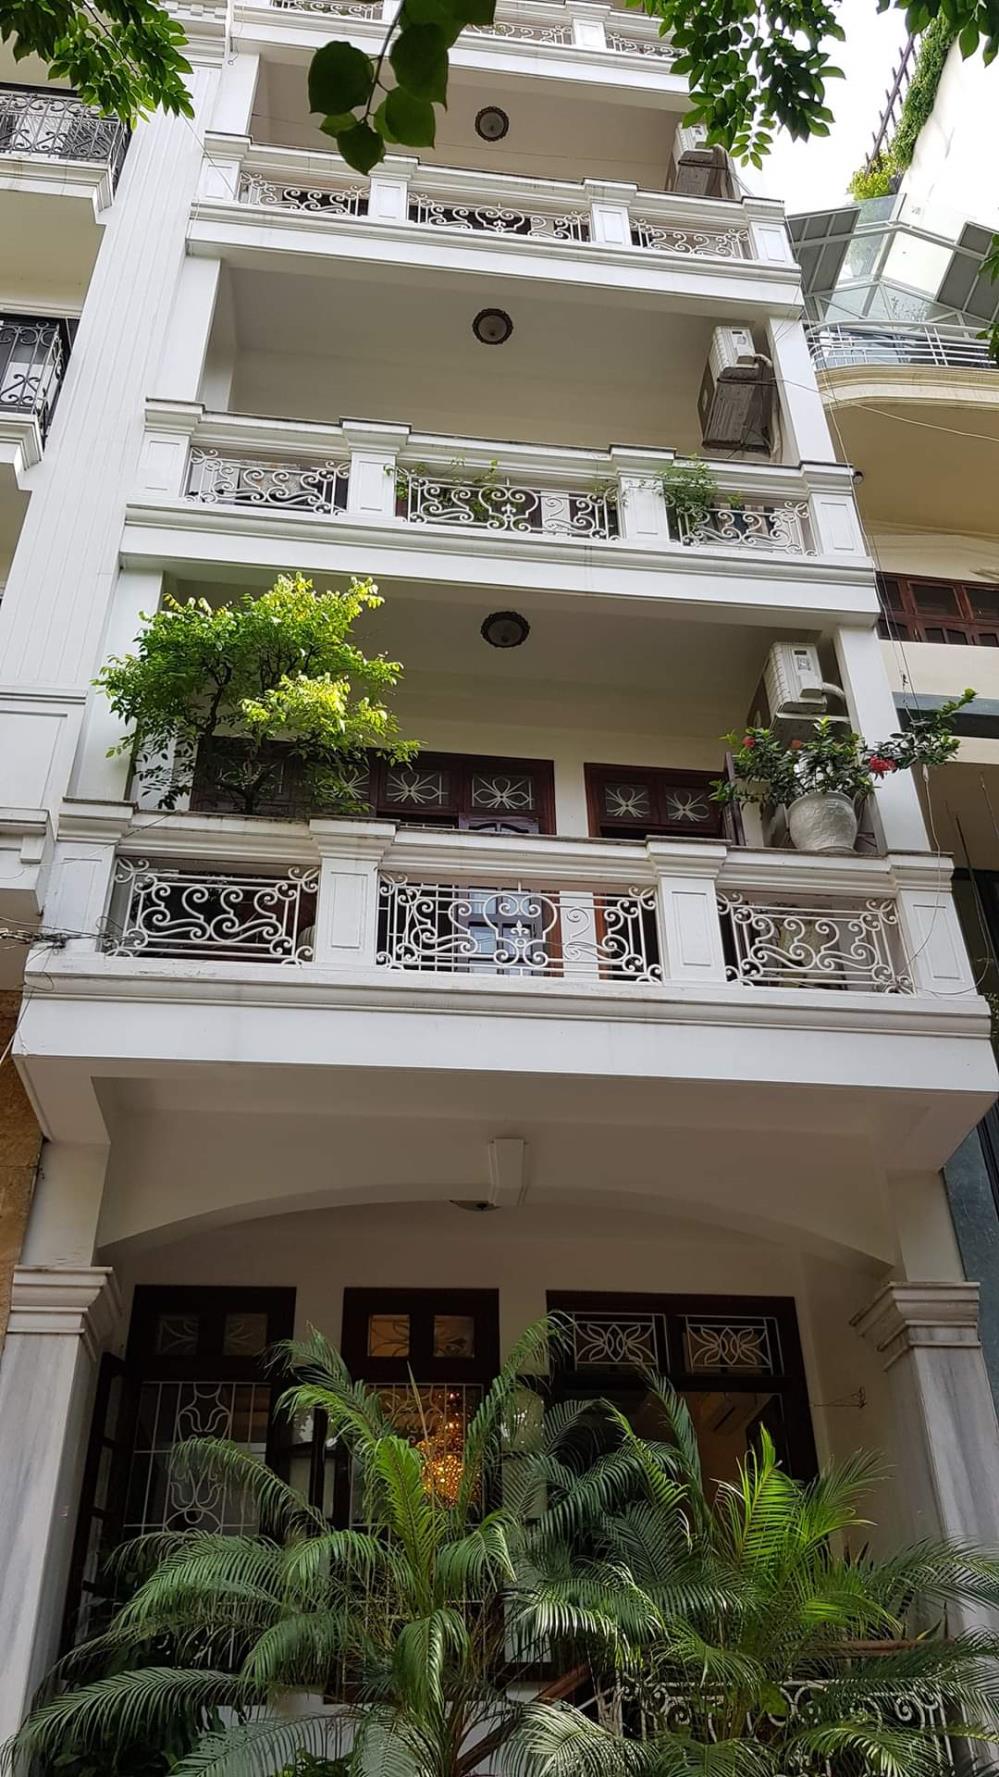 Chính chủ cho thuê nhà kiểu biệt thự phố cổ tại phố Tôn Thất Thiệp, trung tâm Quận Ba Đình, Hà Nội1166639